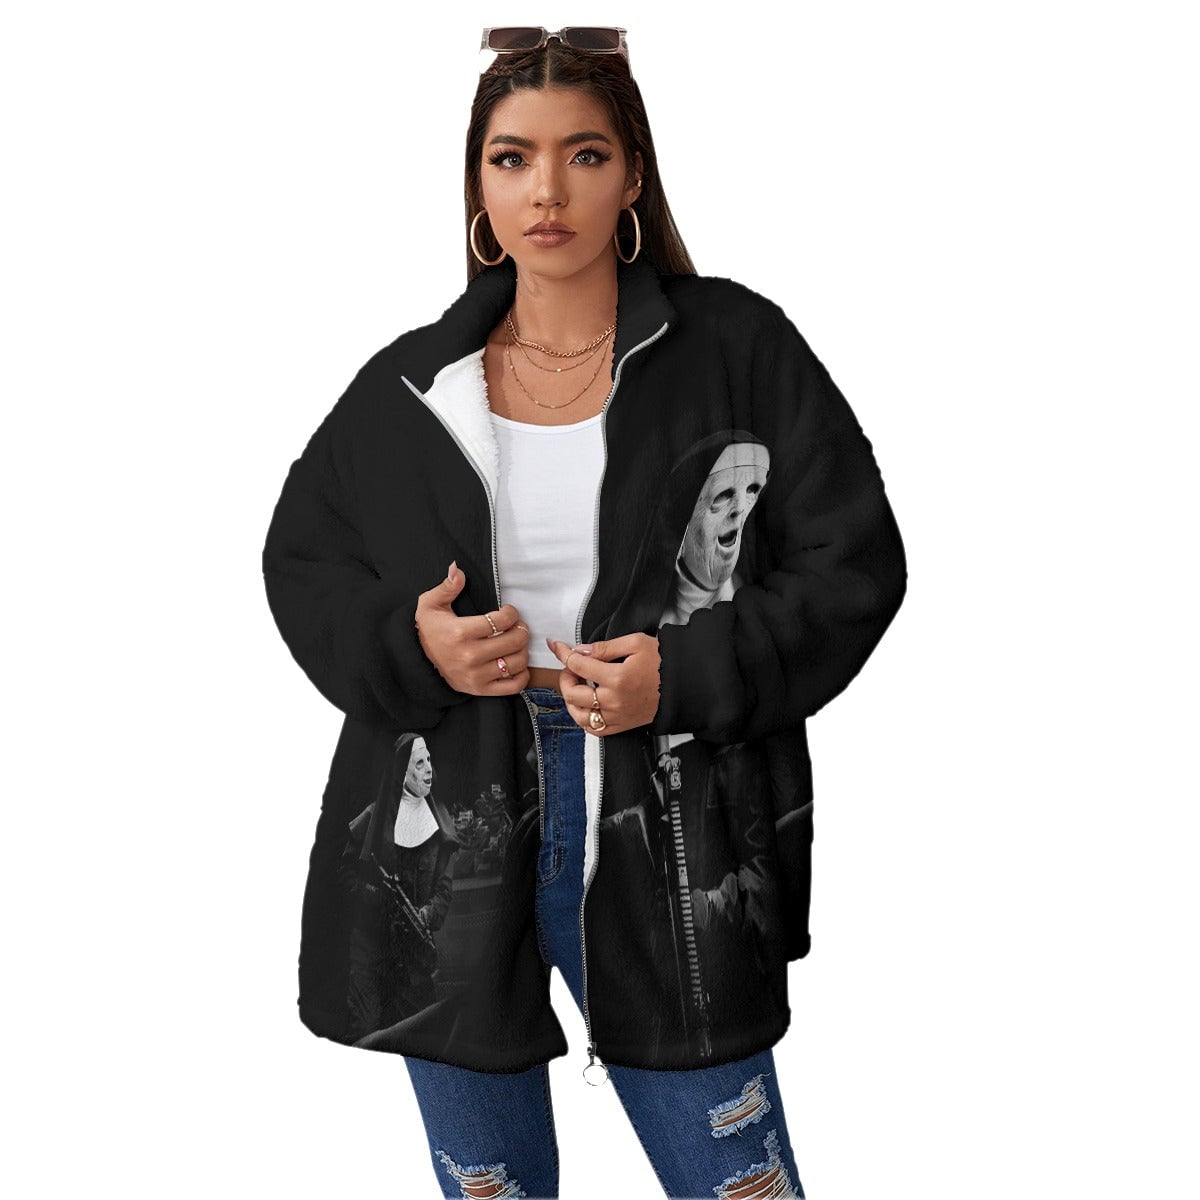 Mobster Boston Massachusetts Art Women’s Borg Fleece Oversize Jacket